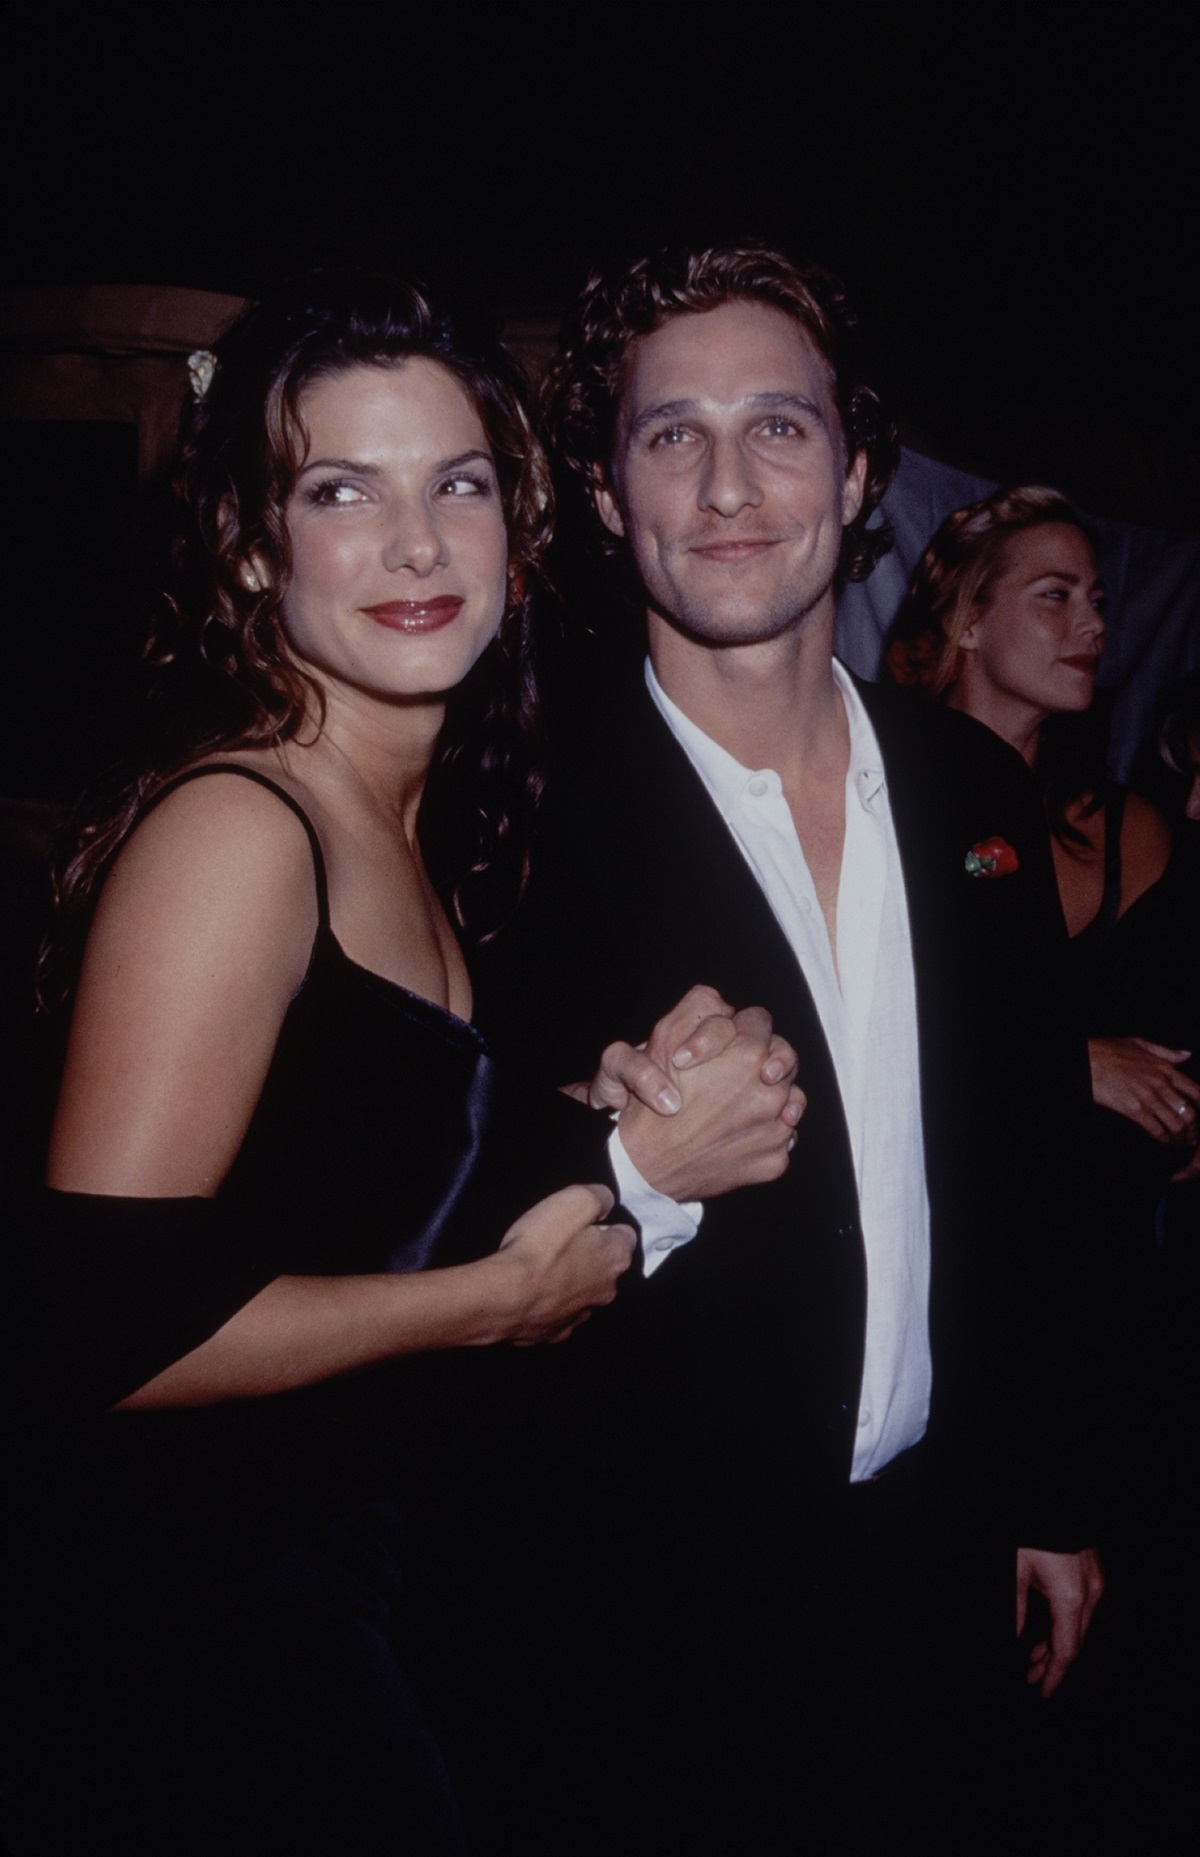 Matthew McConaughey and Sandra Bullock